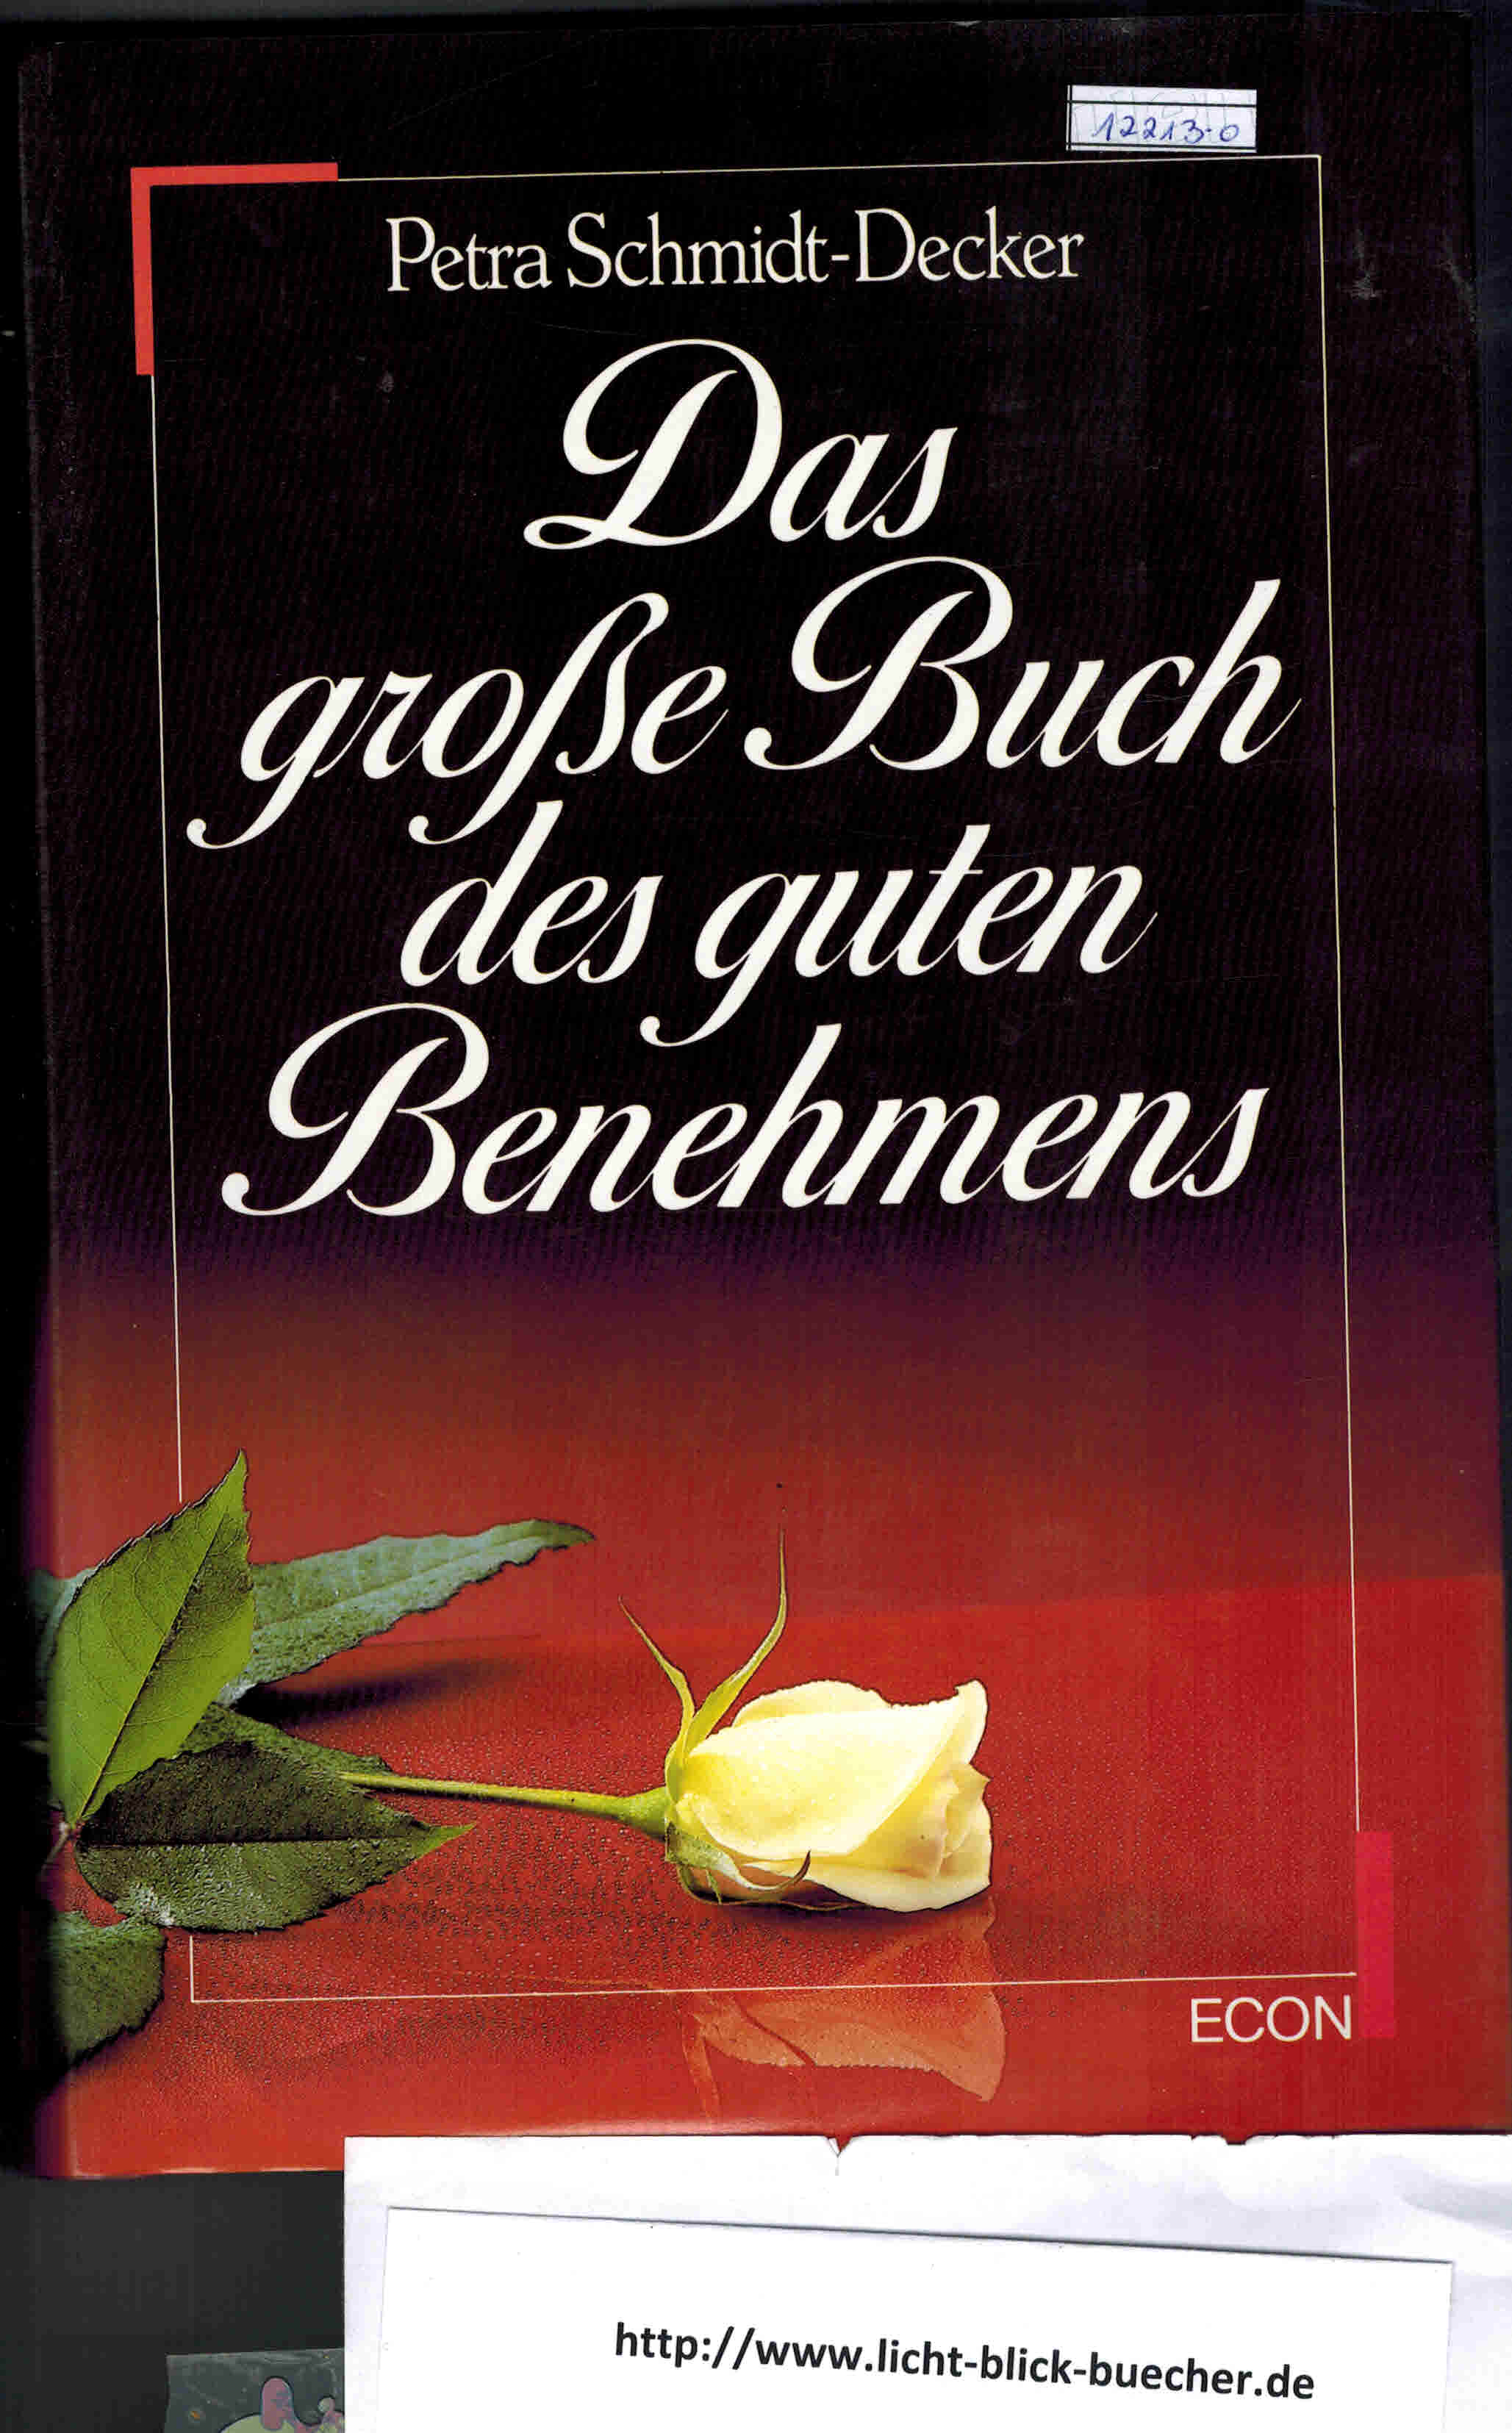 Das grosse Buch des guten Benehmens Petra Schmidt-Decker